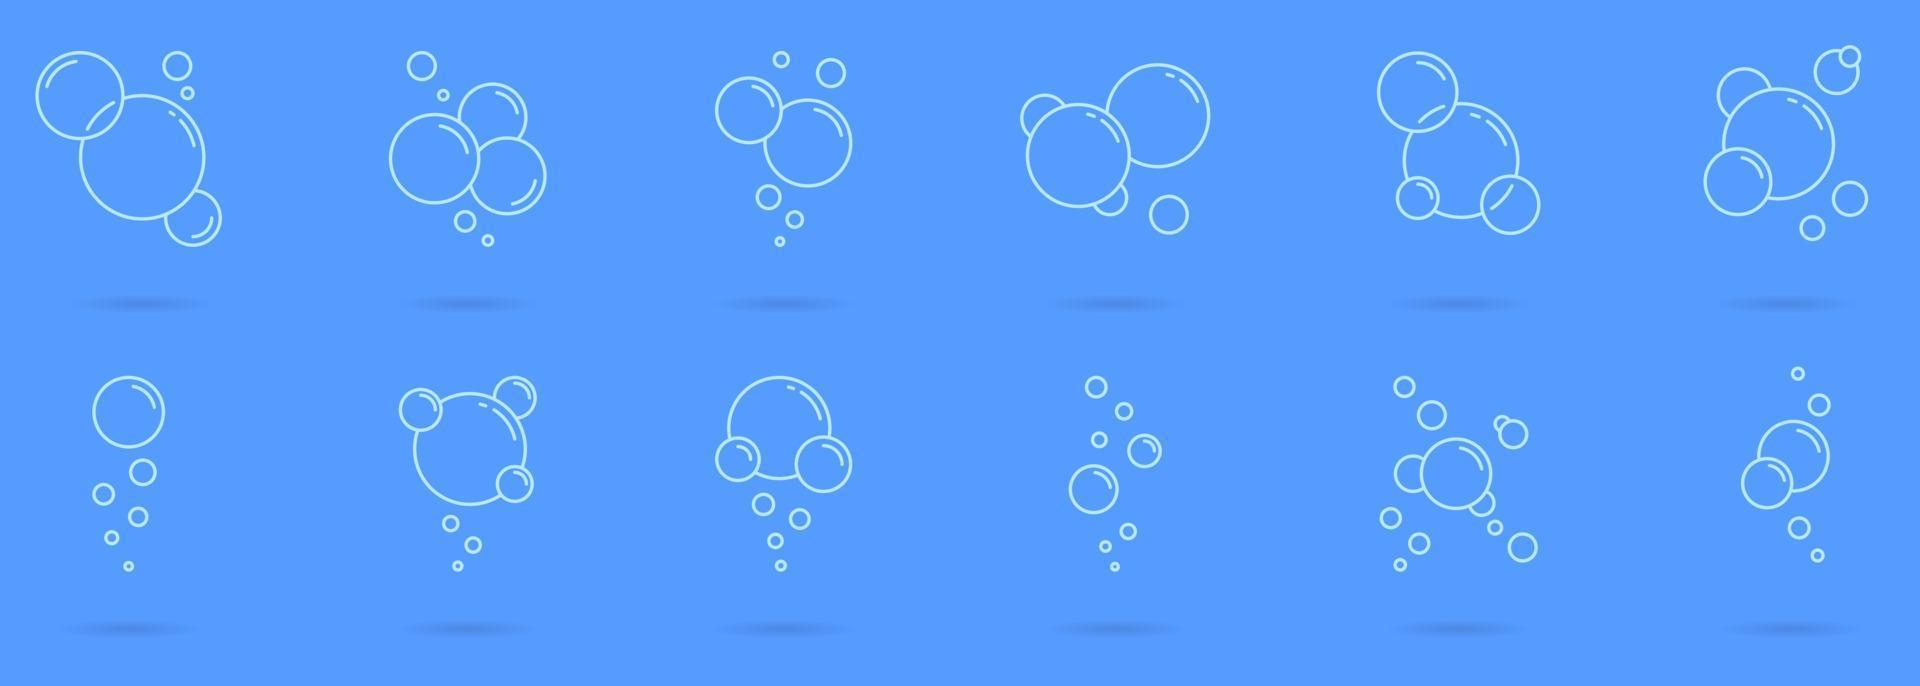 bolhas redondas de ícone de espuma ou sopa definido no estilo de neumorfismo. refrigerante, água com gás, lavanderia, champanhe, pictograma de limpeza. ícone de sabão de bolha de círculo. ilustração vetorial isolado. vetor